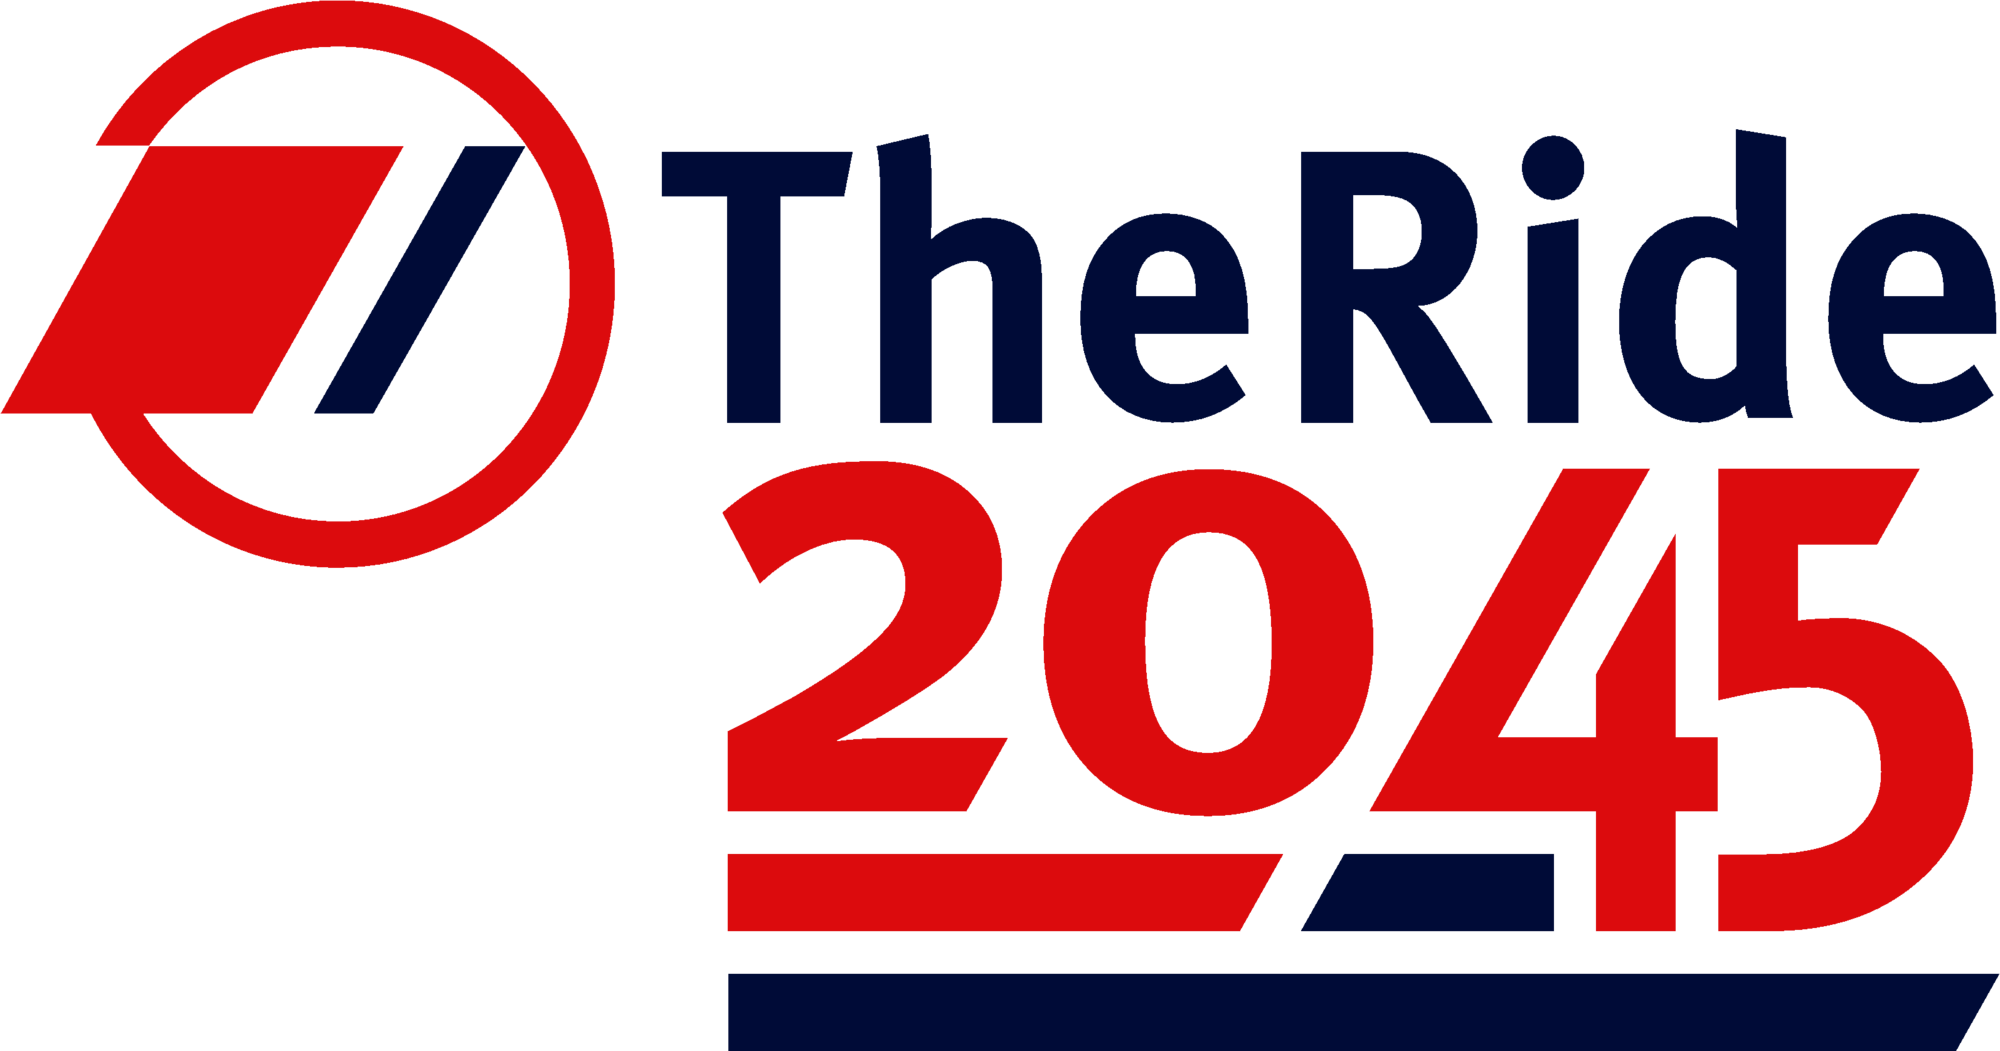 TheRide 2045 Long Range Plan logo